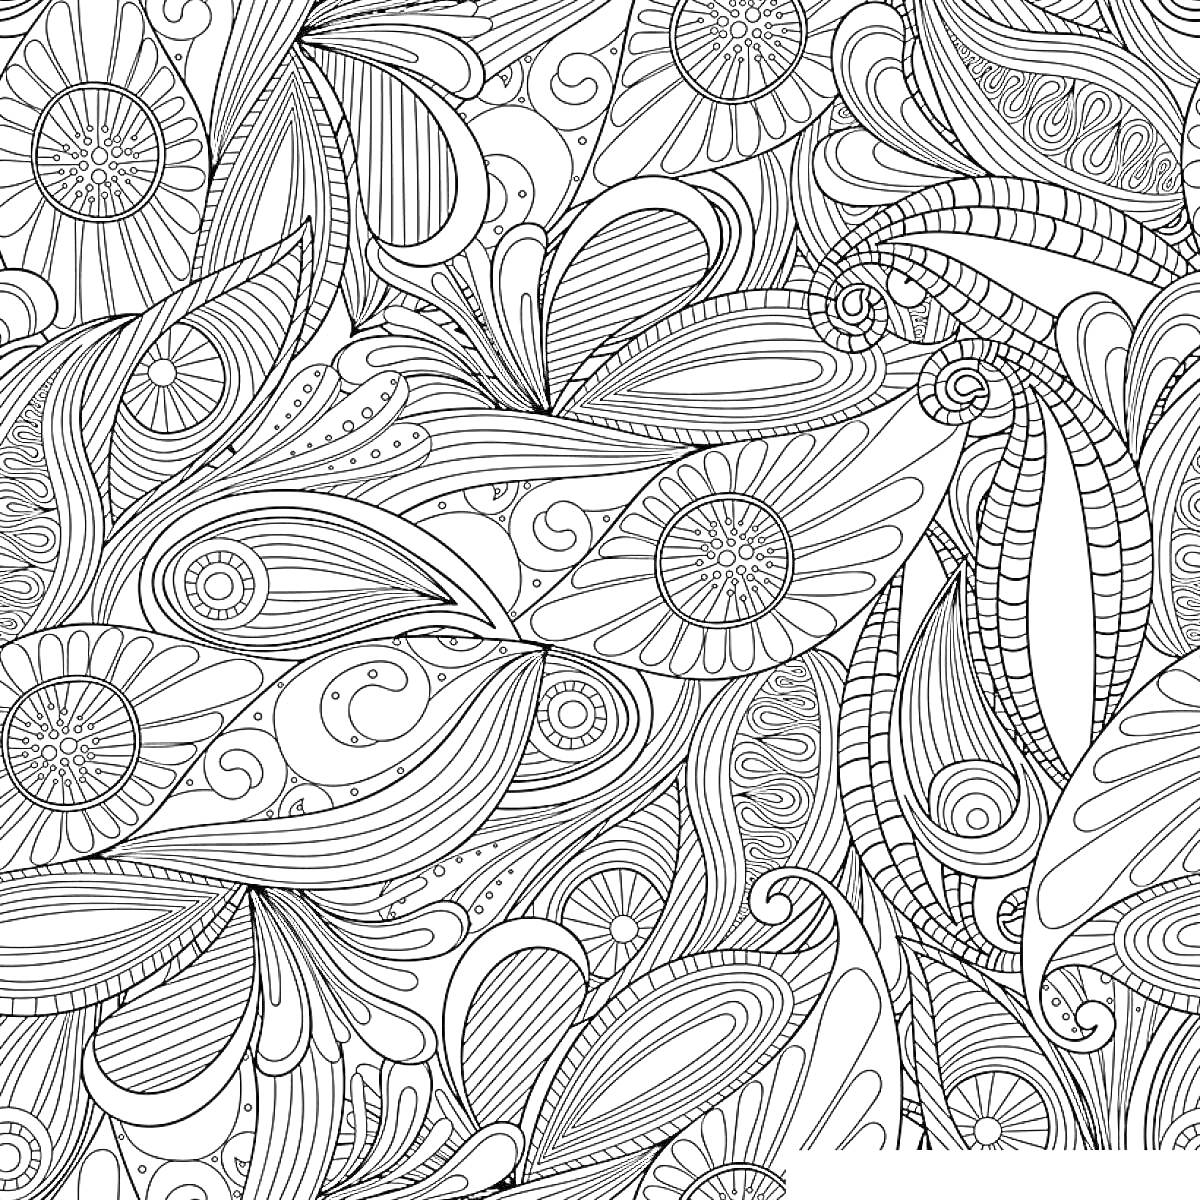 Раскраска Узор с большими цветами и сложными орнаментами из листьев и завитков